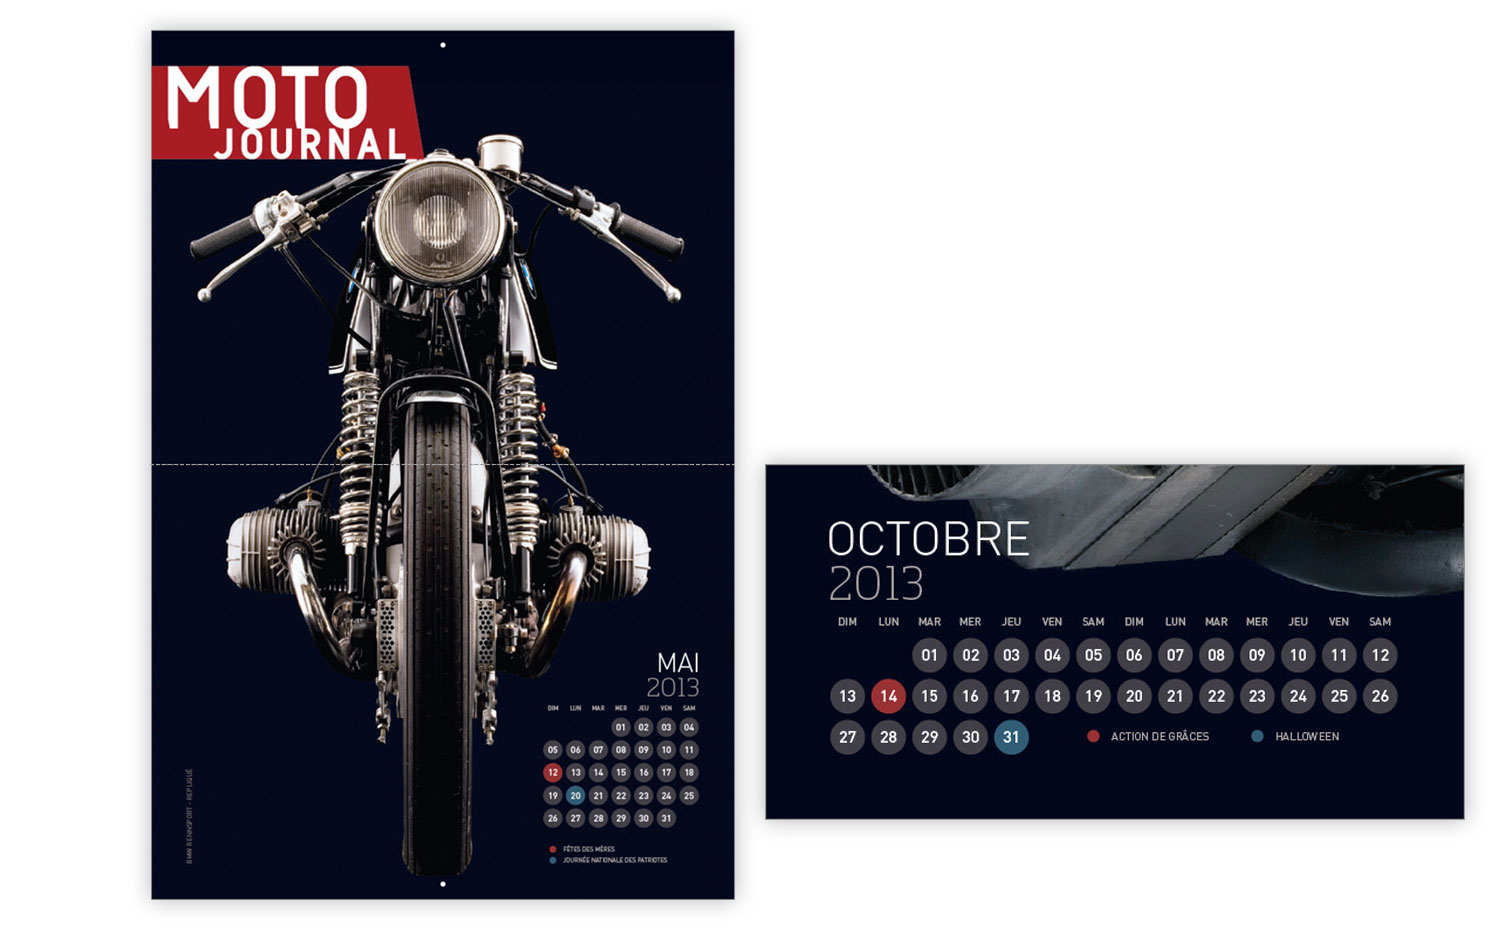 Moto Journal 2013 calendar